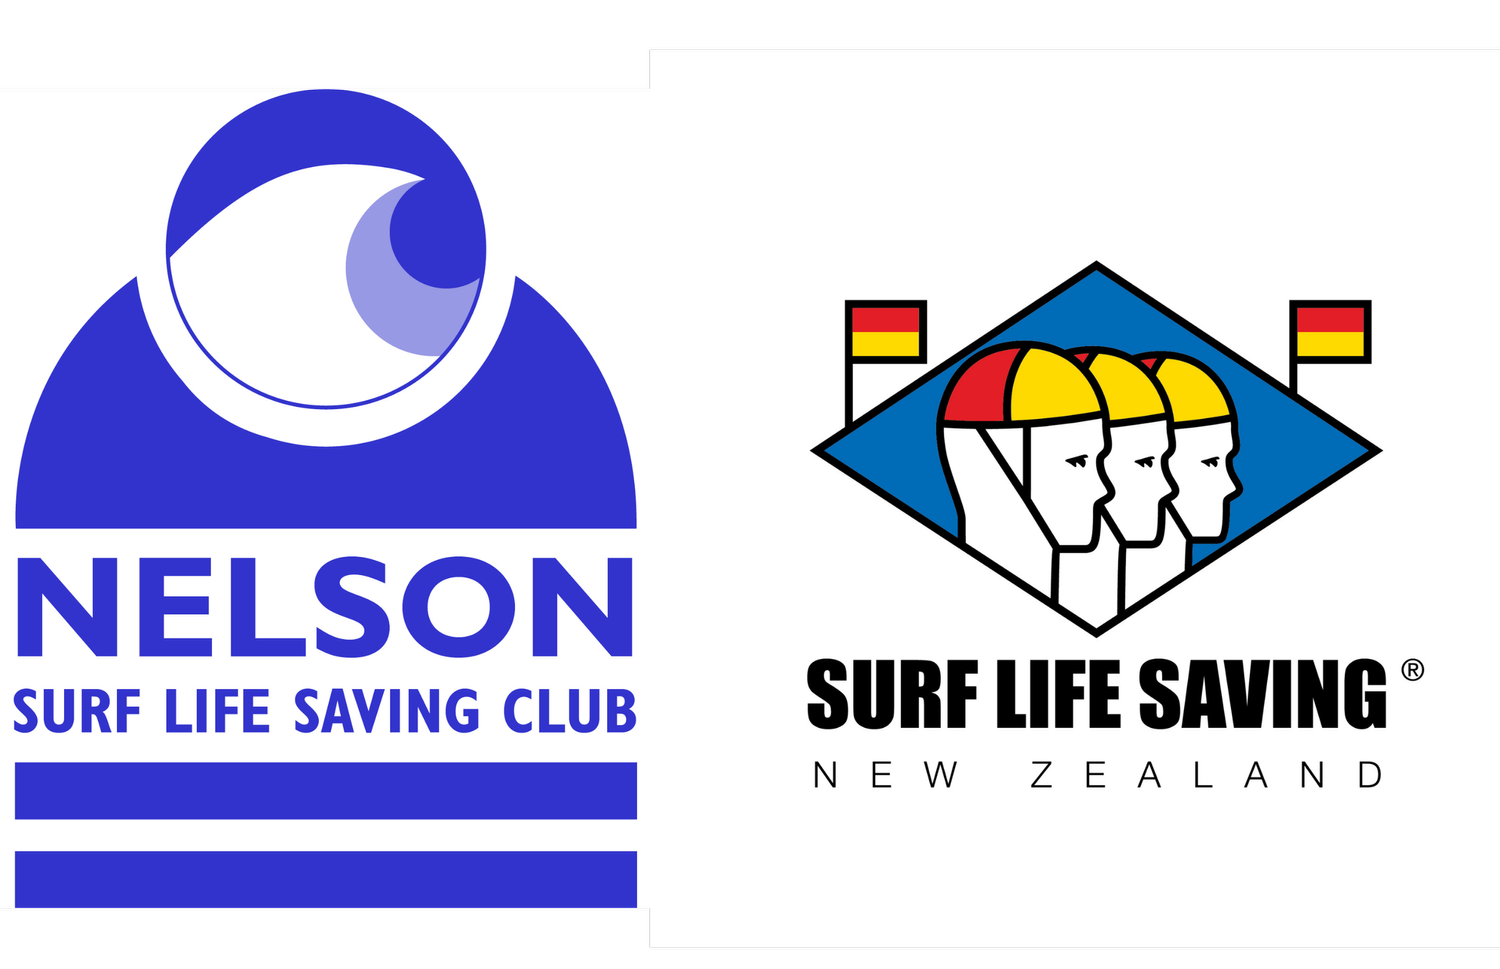 Nelson Surf Life Saving Club